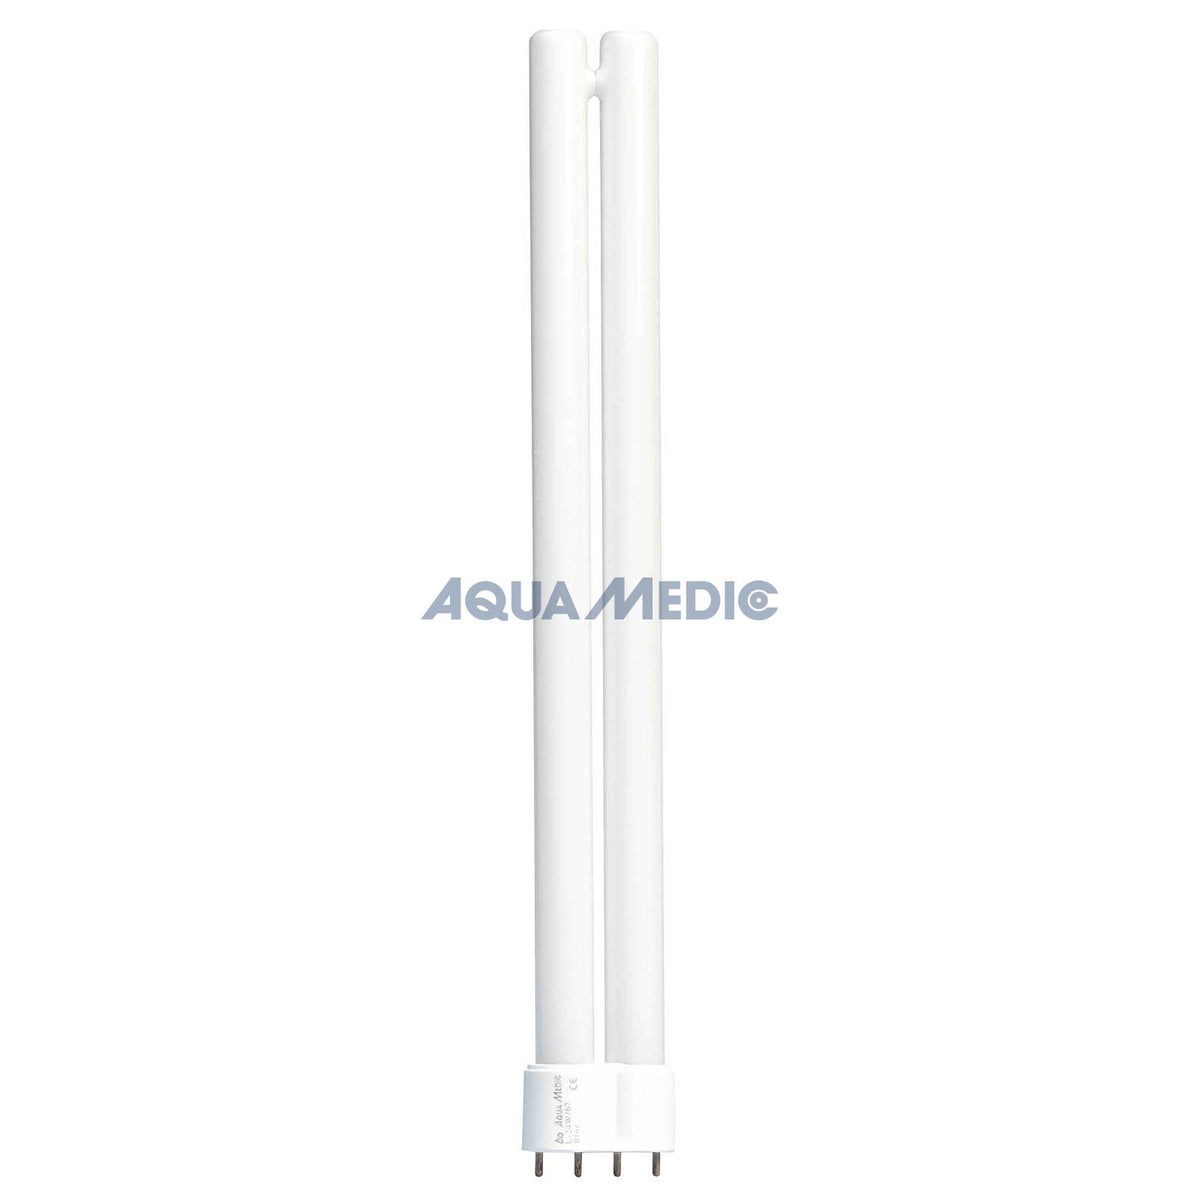 Aqua Medic Ocean White-Blue Power Compact 24W